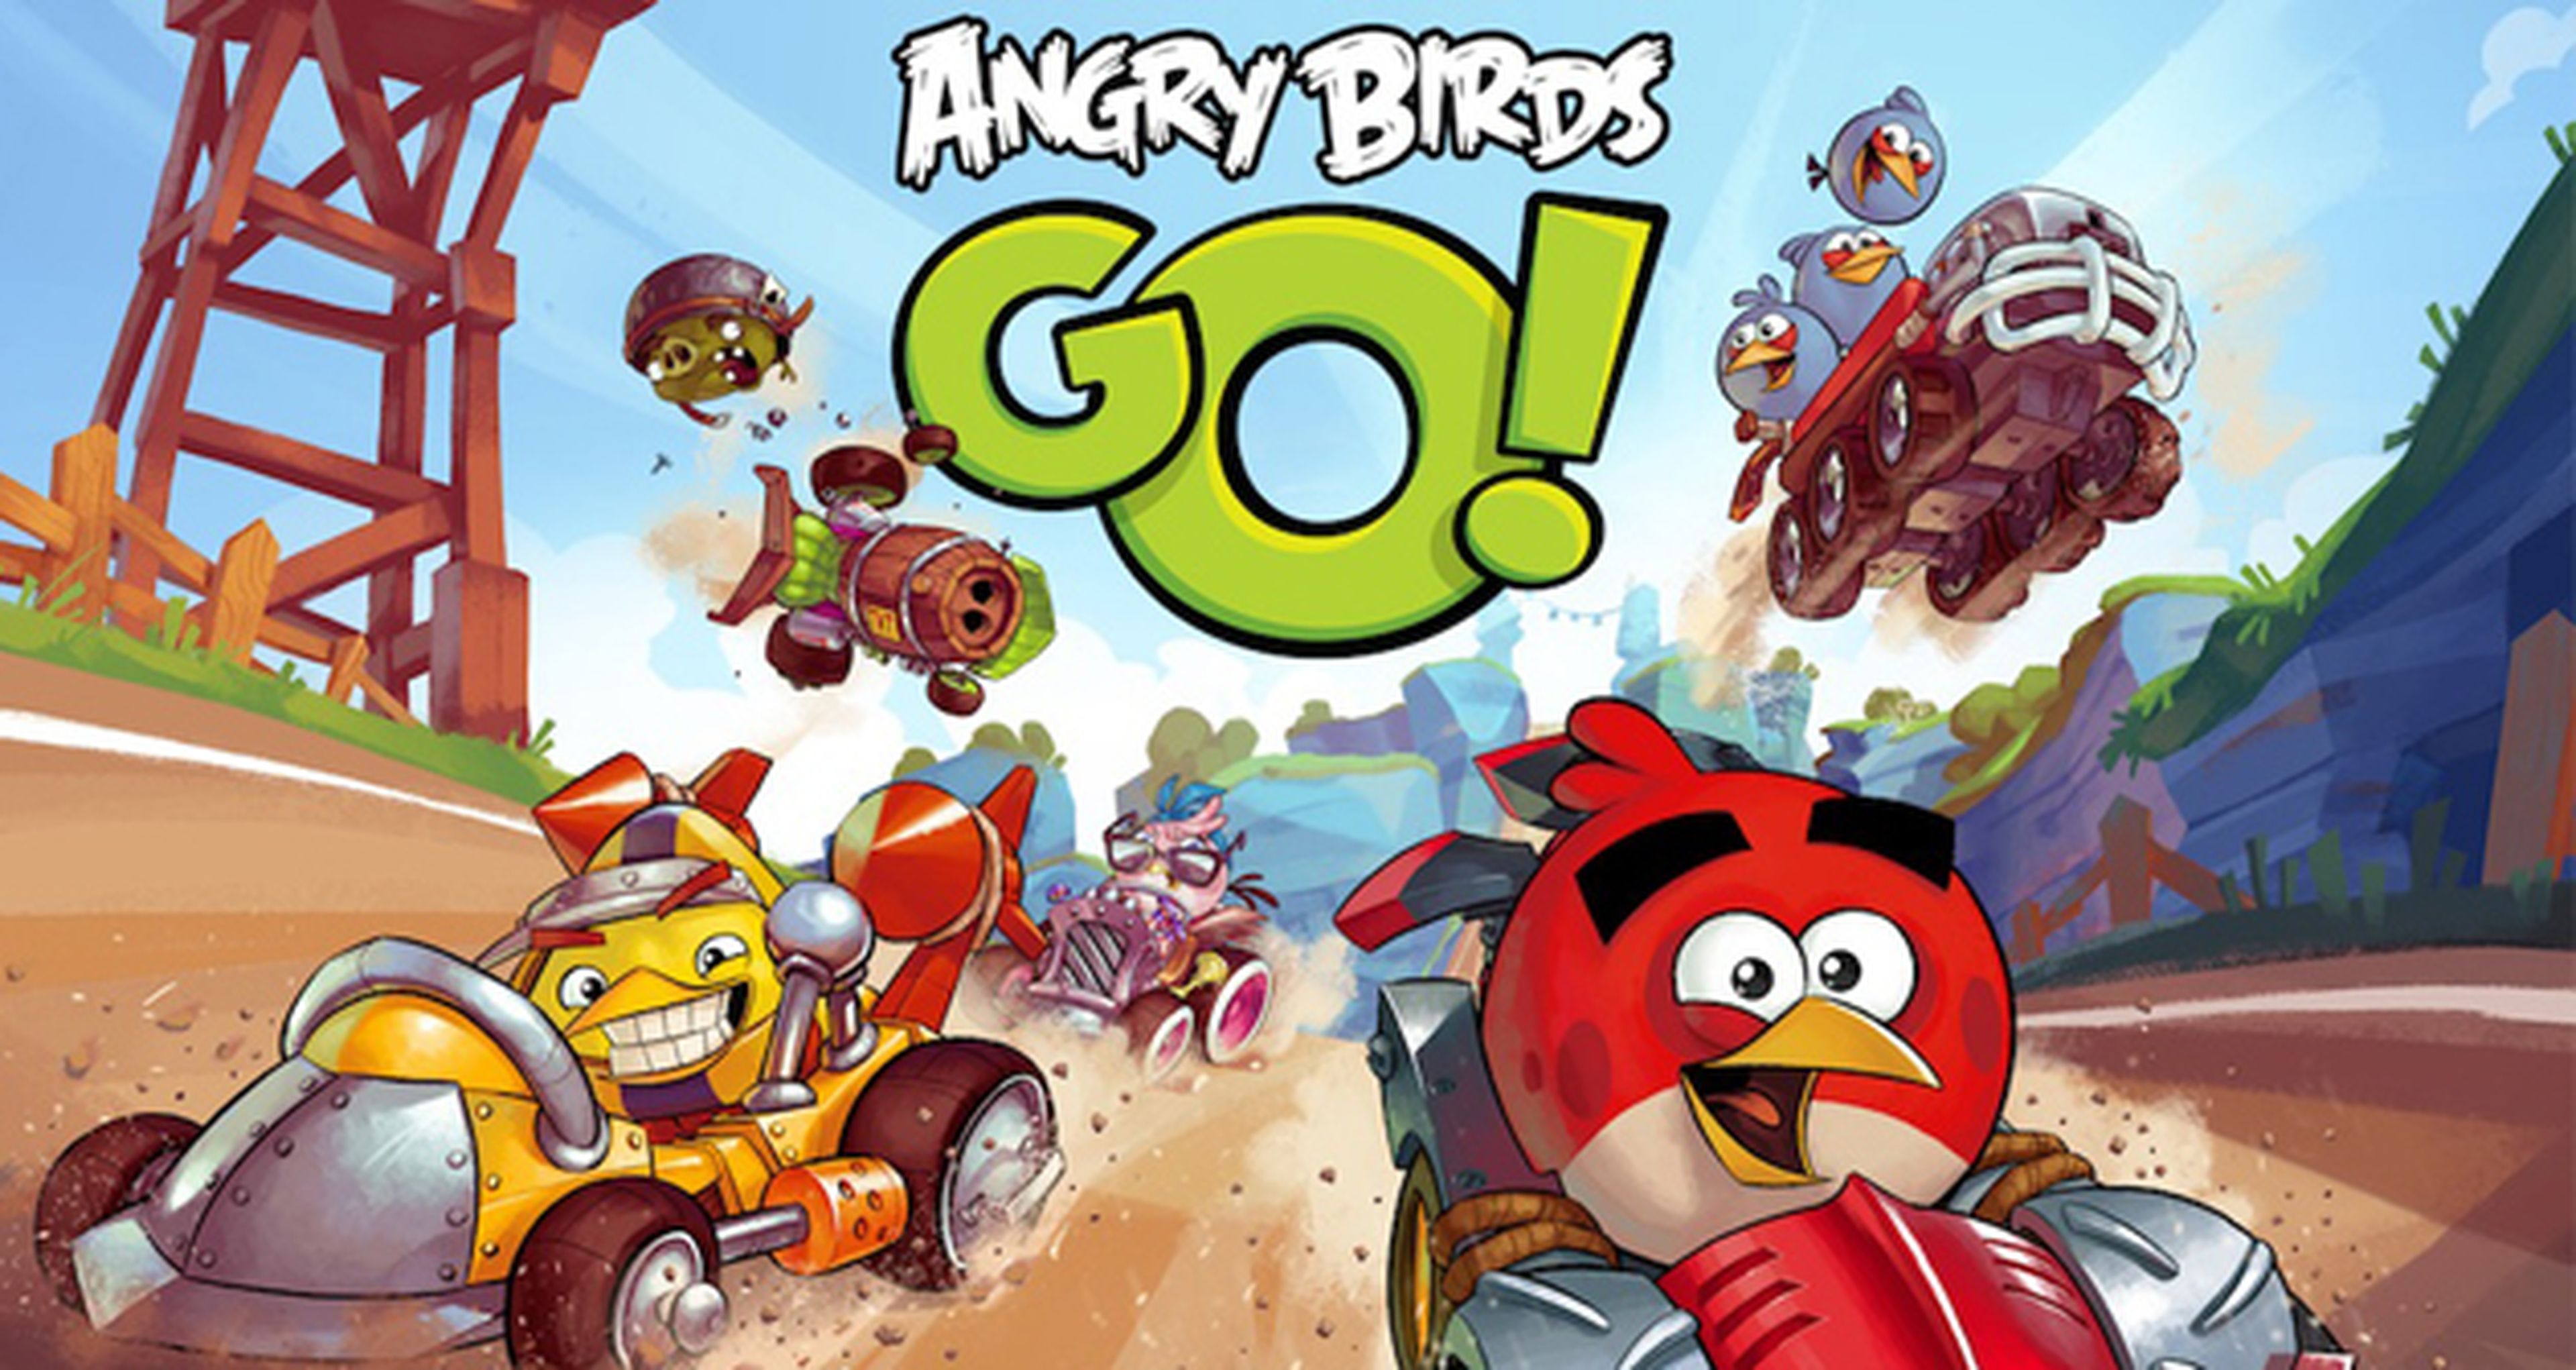 Los karts de Angry Birds Go! y el precio de sus micropagos